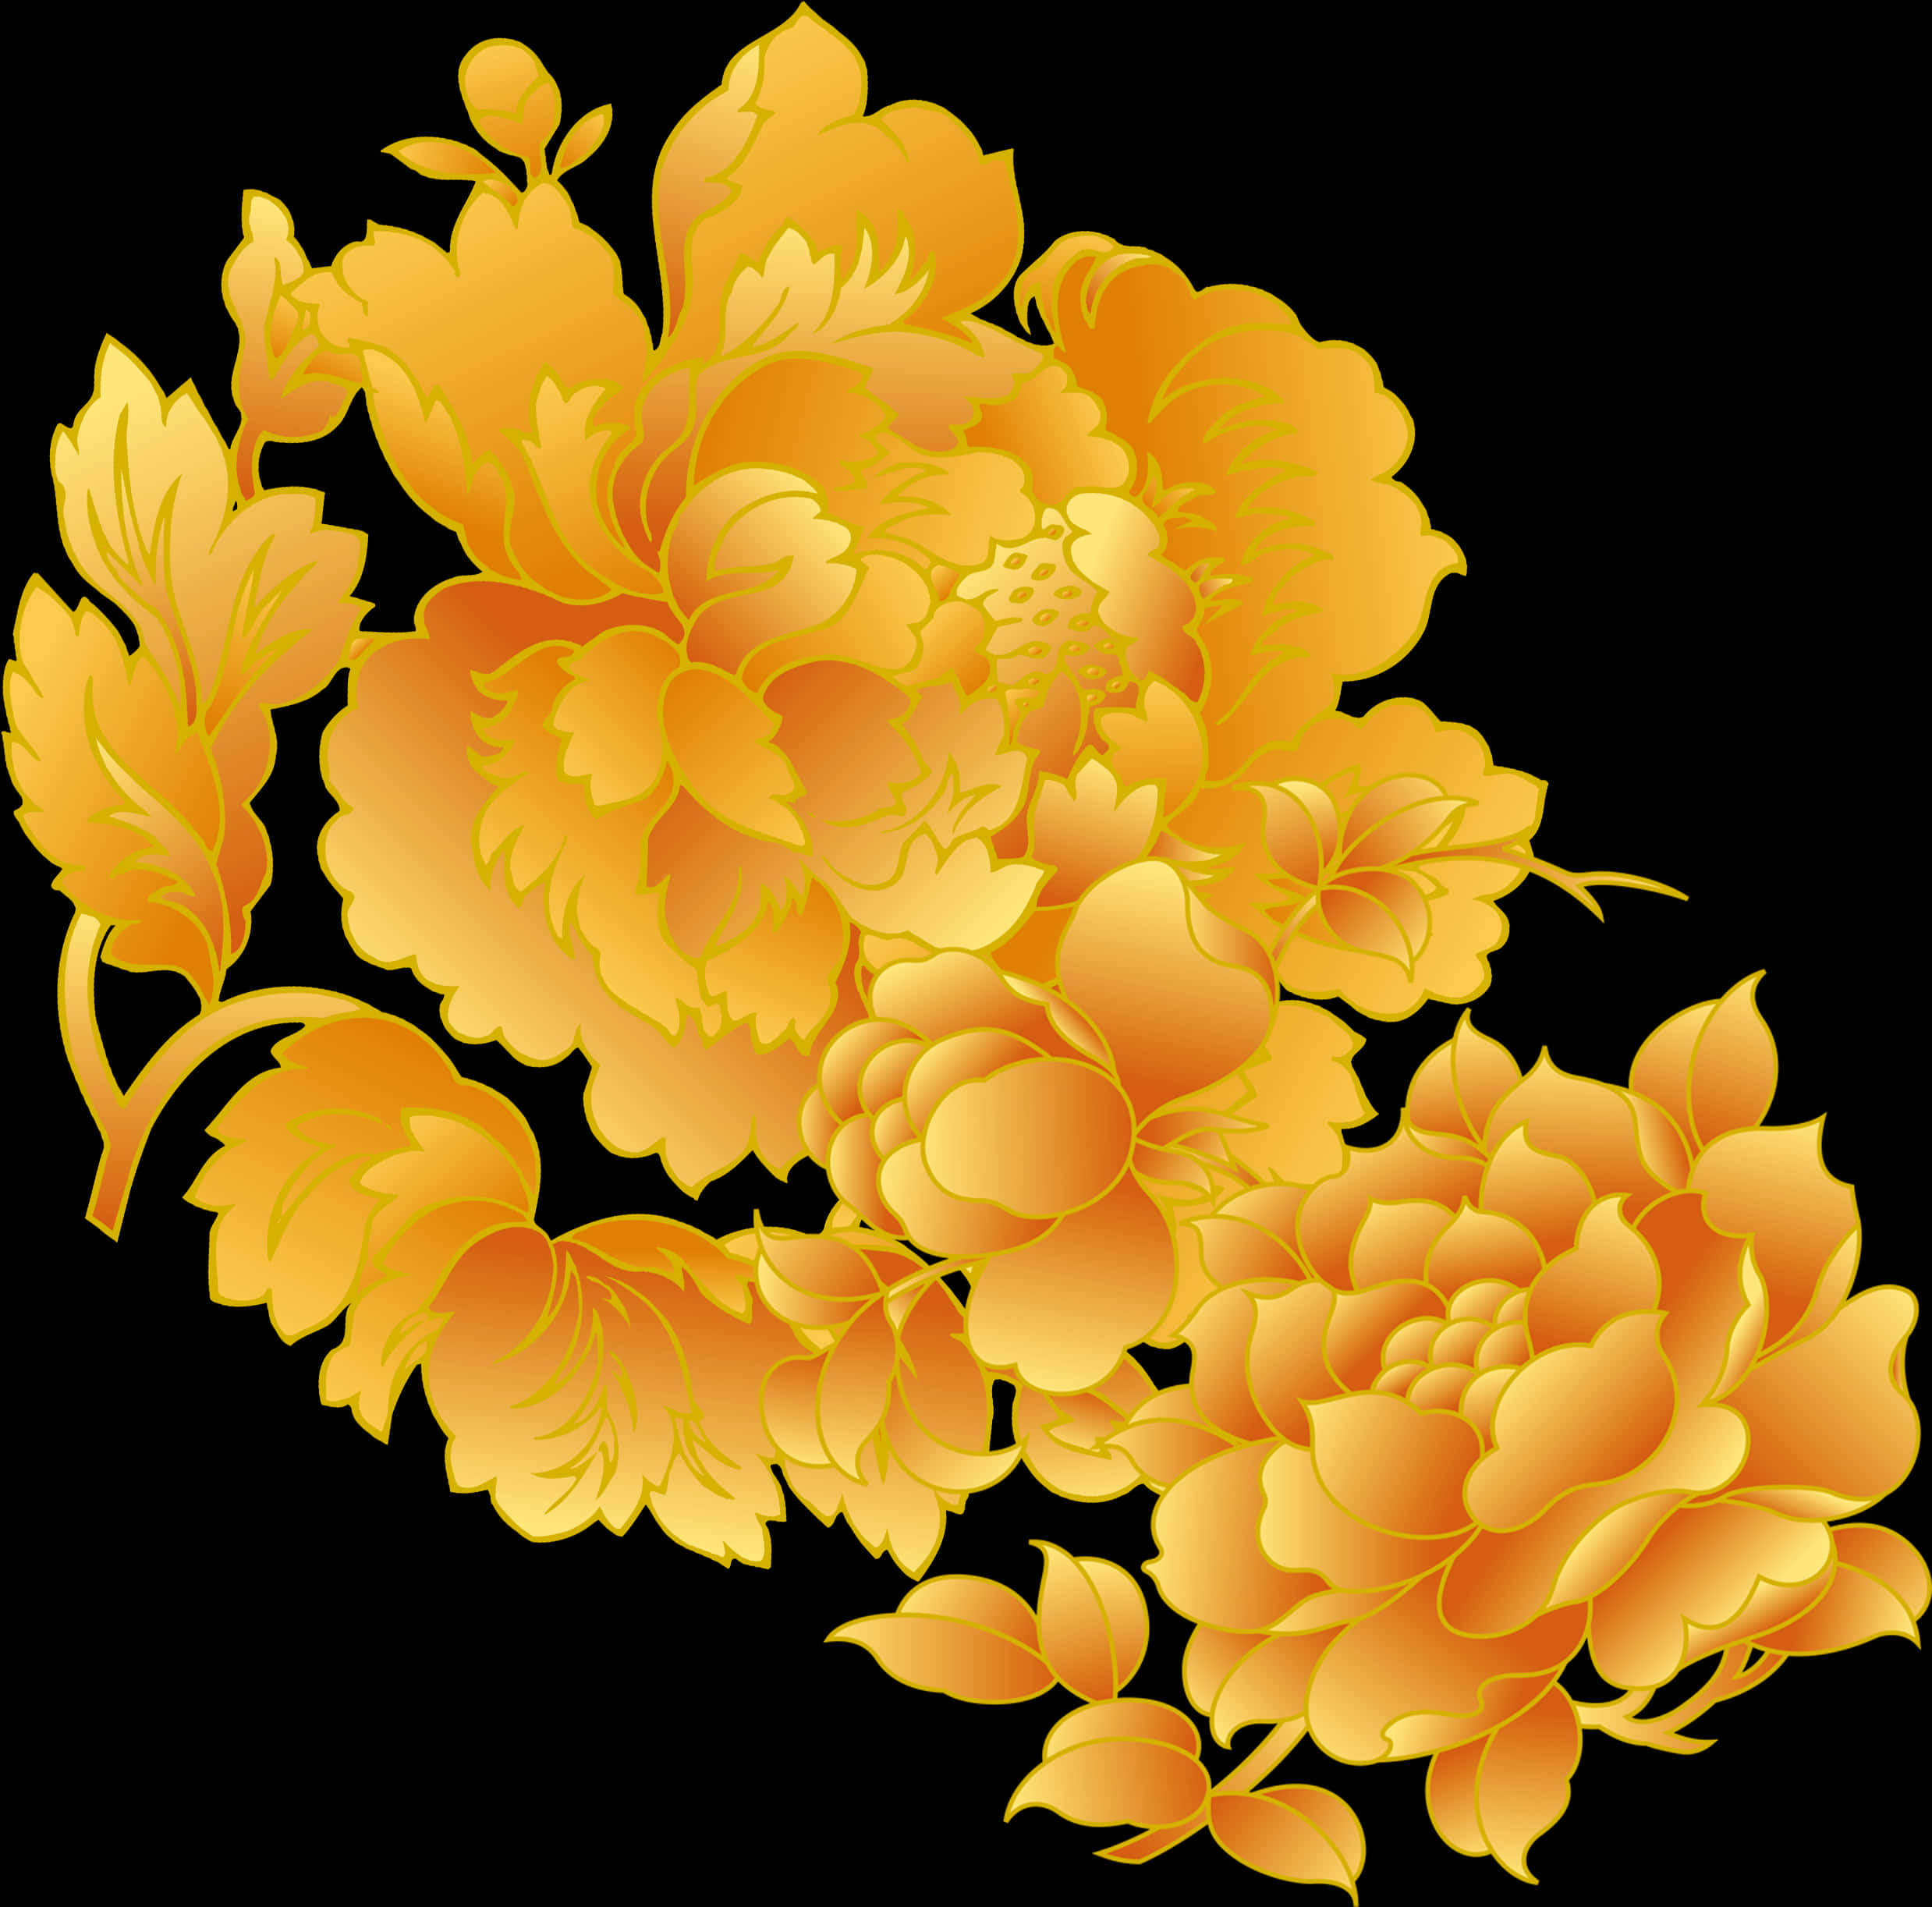 Golden Floral Design Graphic PNG image